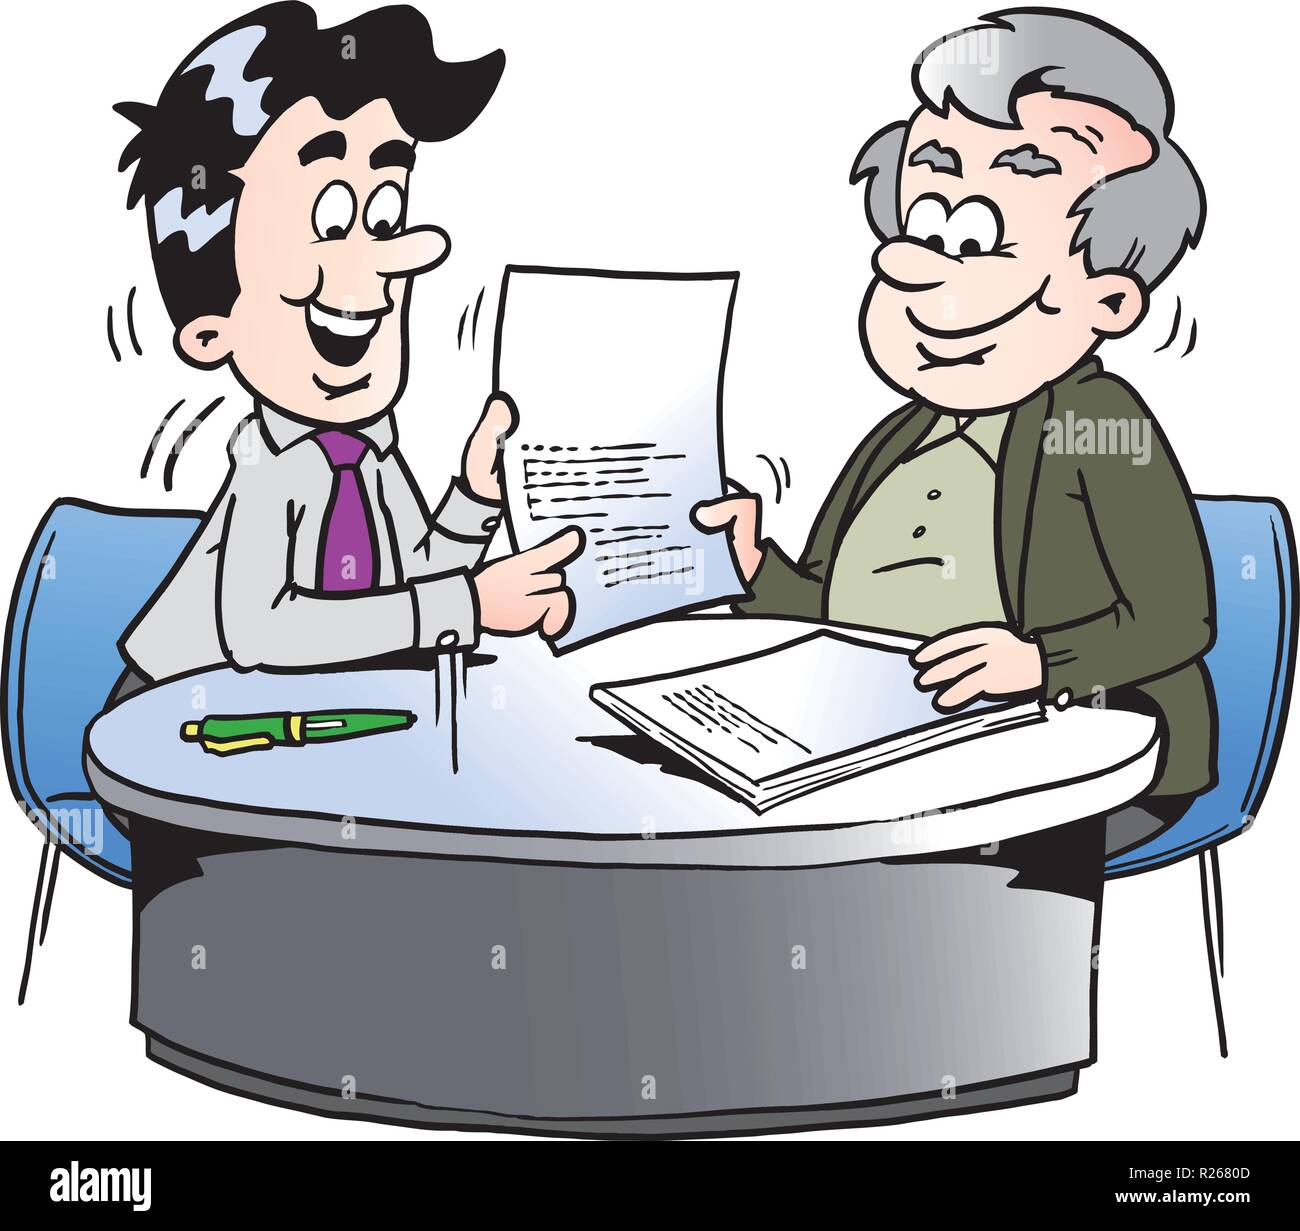 Cartoon Vector illustration d'un homme d'affaires et un homme plus âgé ayant une réunion d'affaires Illustration de Vecteur